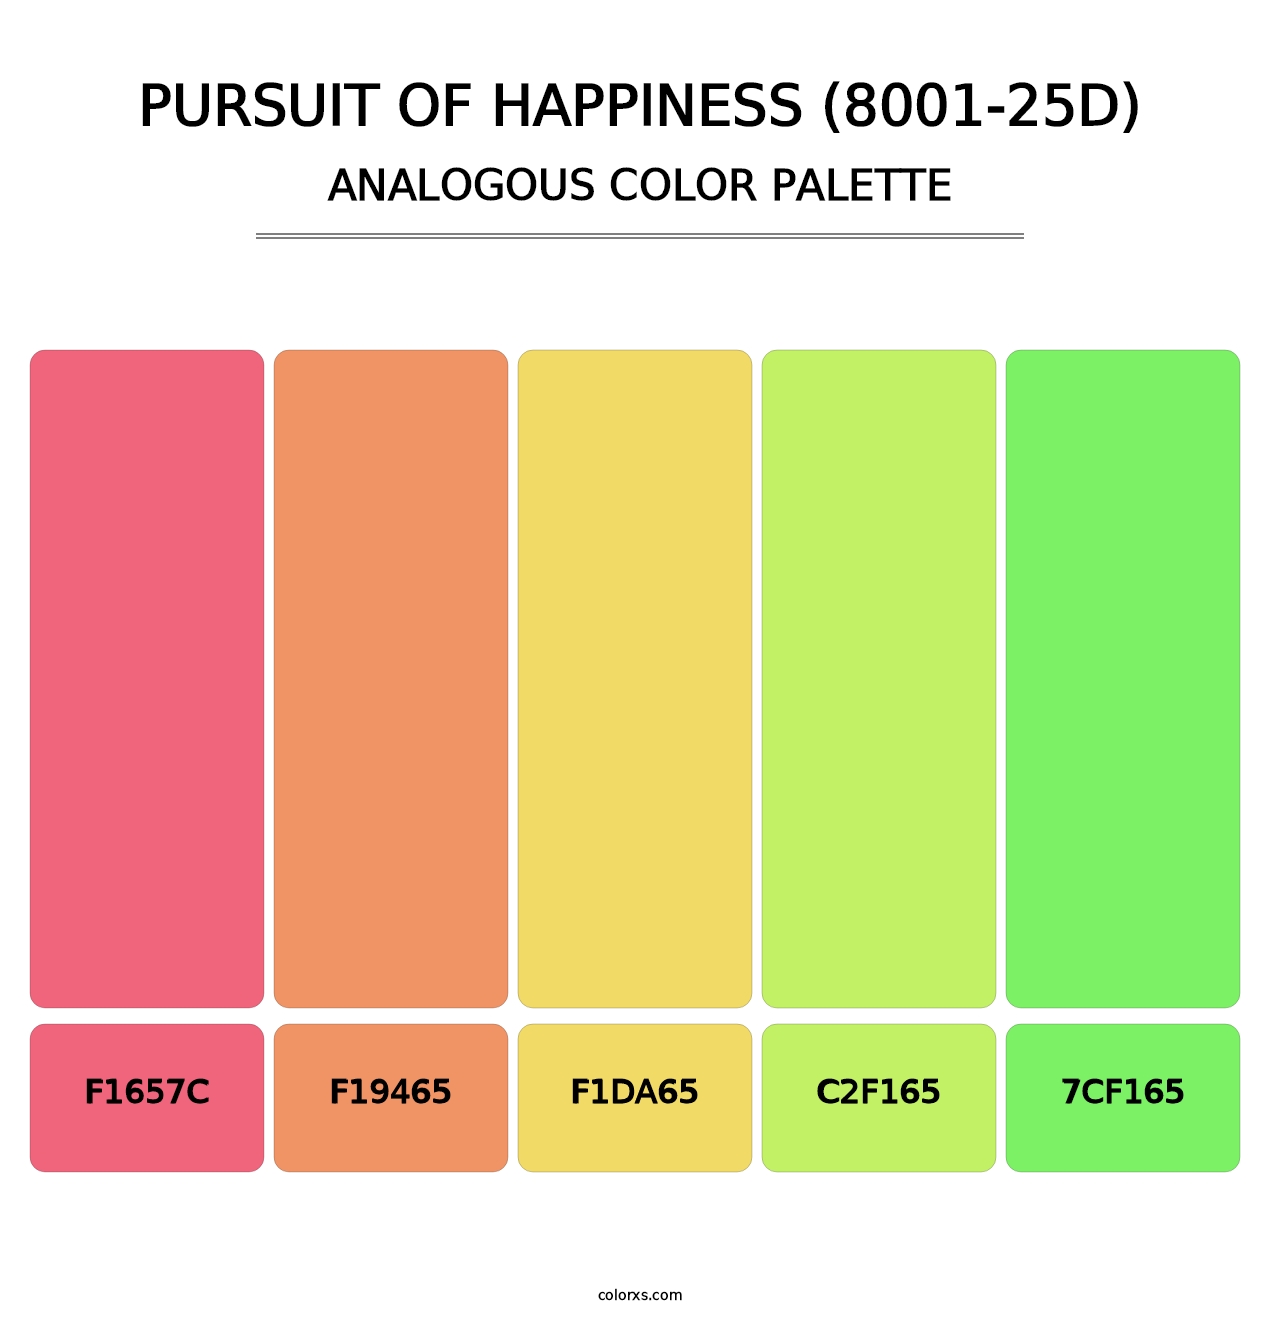 Pursuit of Happiness (8001-25D) - Analogous Color Palette